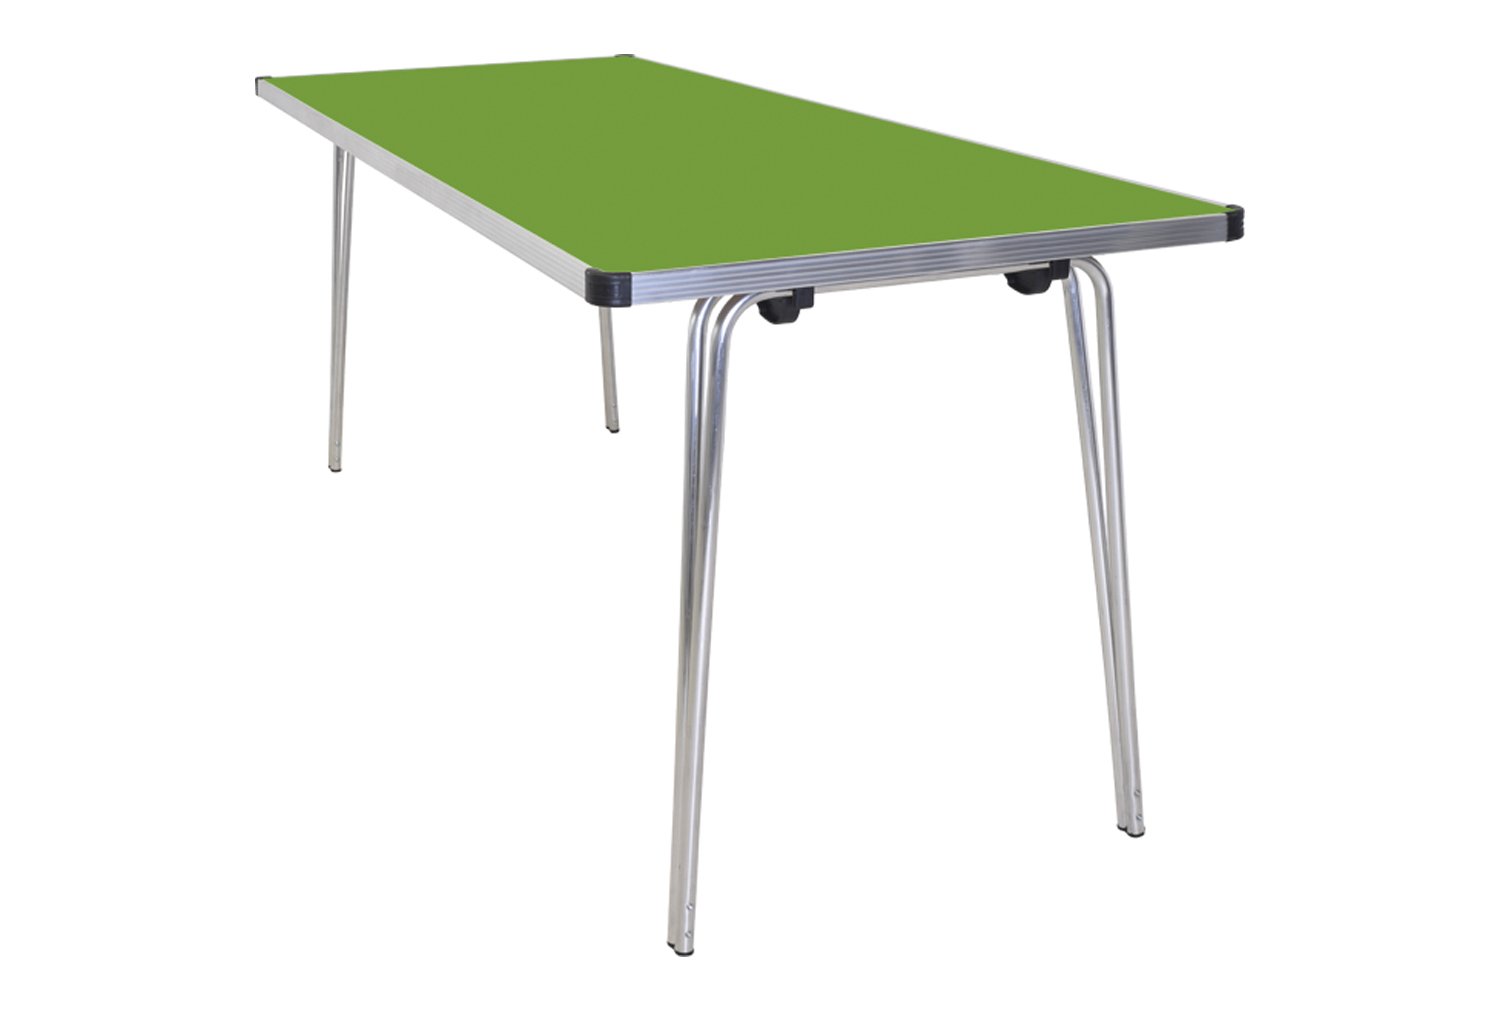 Gopak Contour Plus Folding Table, 183wx61d (cm), Green